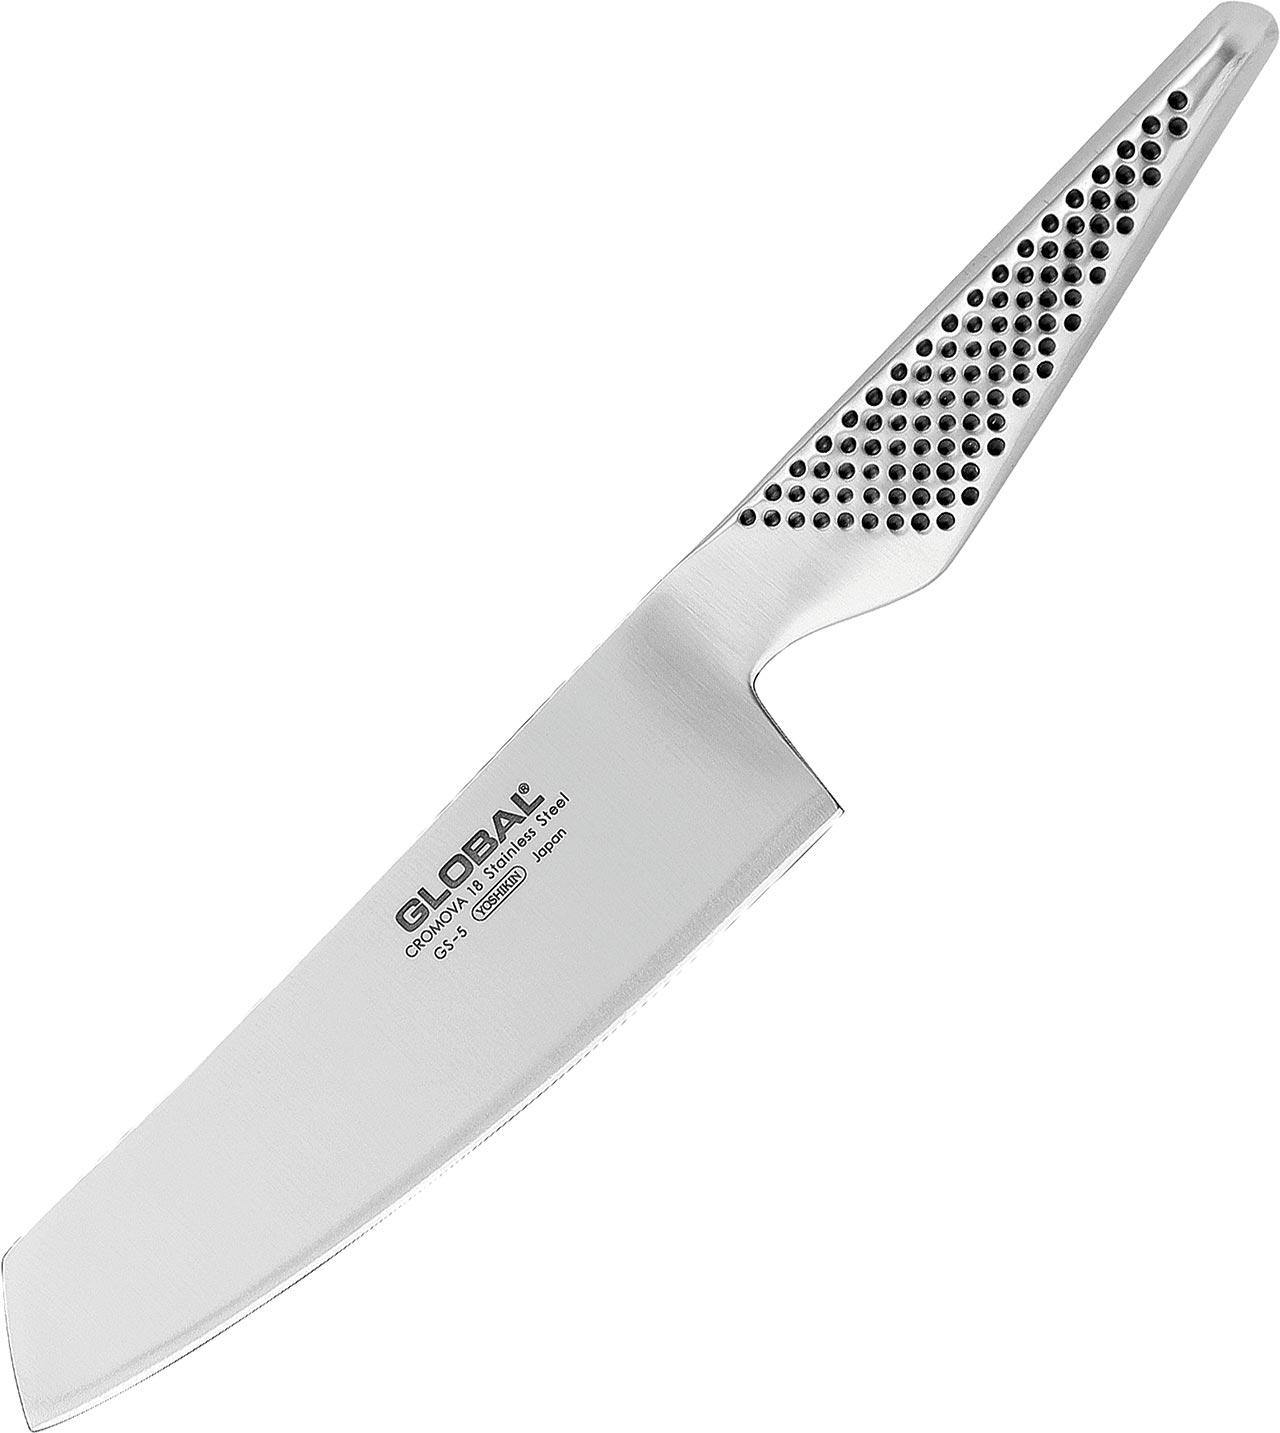 GS-5 Vegetable Knife 14cm